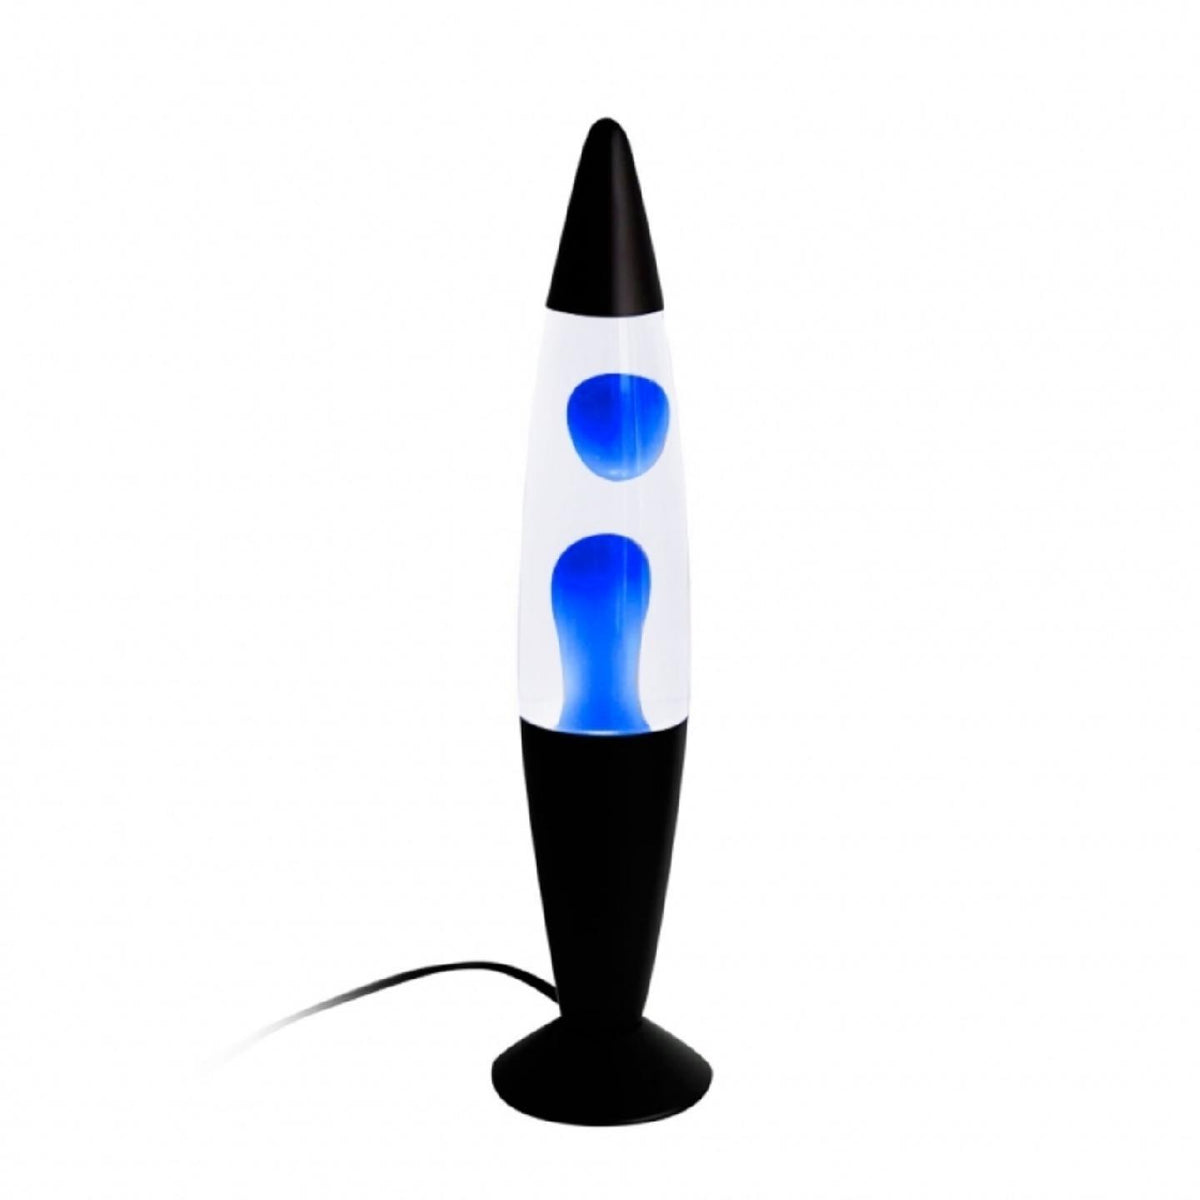 TEMPORA Lampara Infantil Cohete Jt1366 - Azul